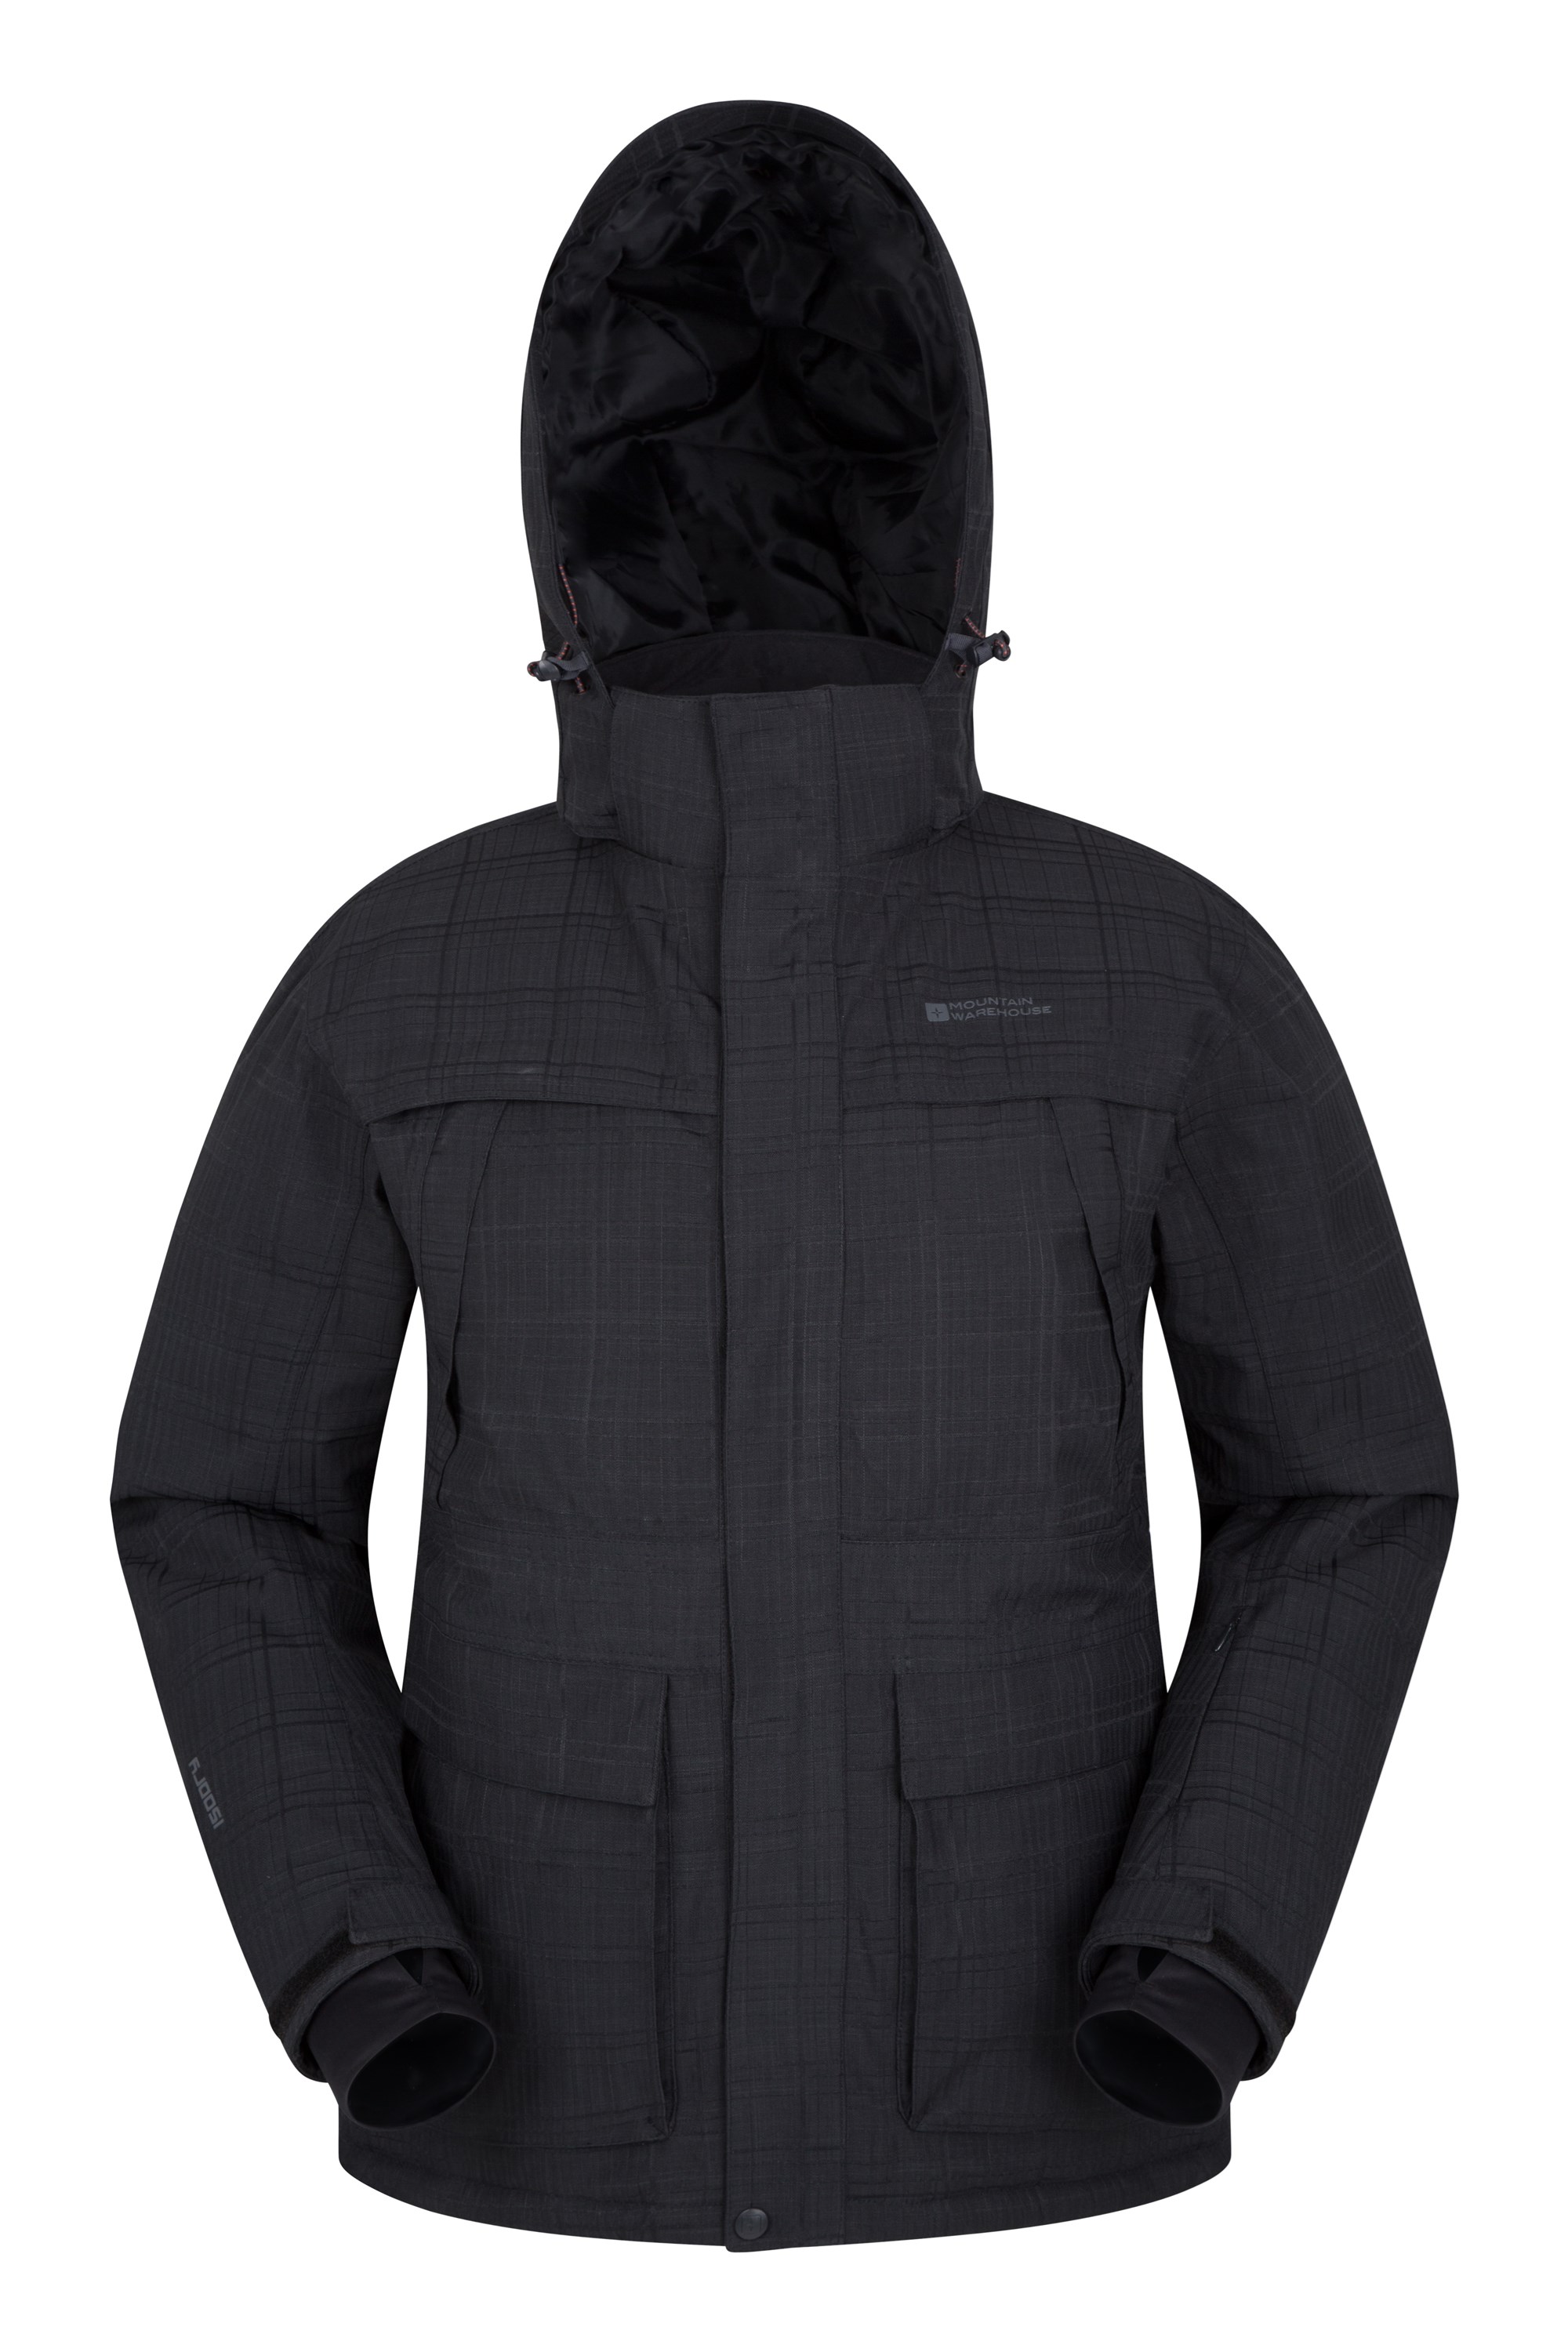 Mountain Warehouse Apollo Mens Ski Jacket Black